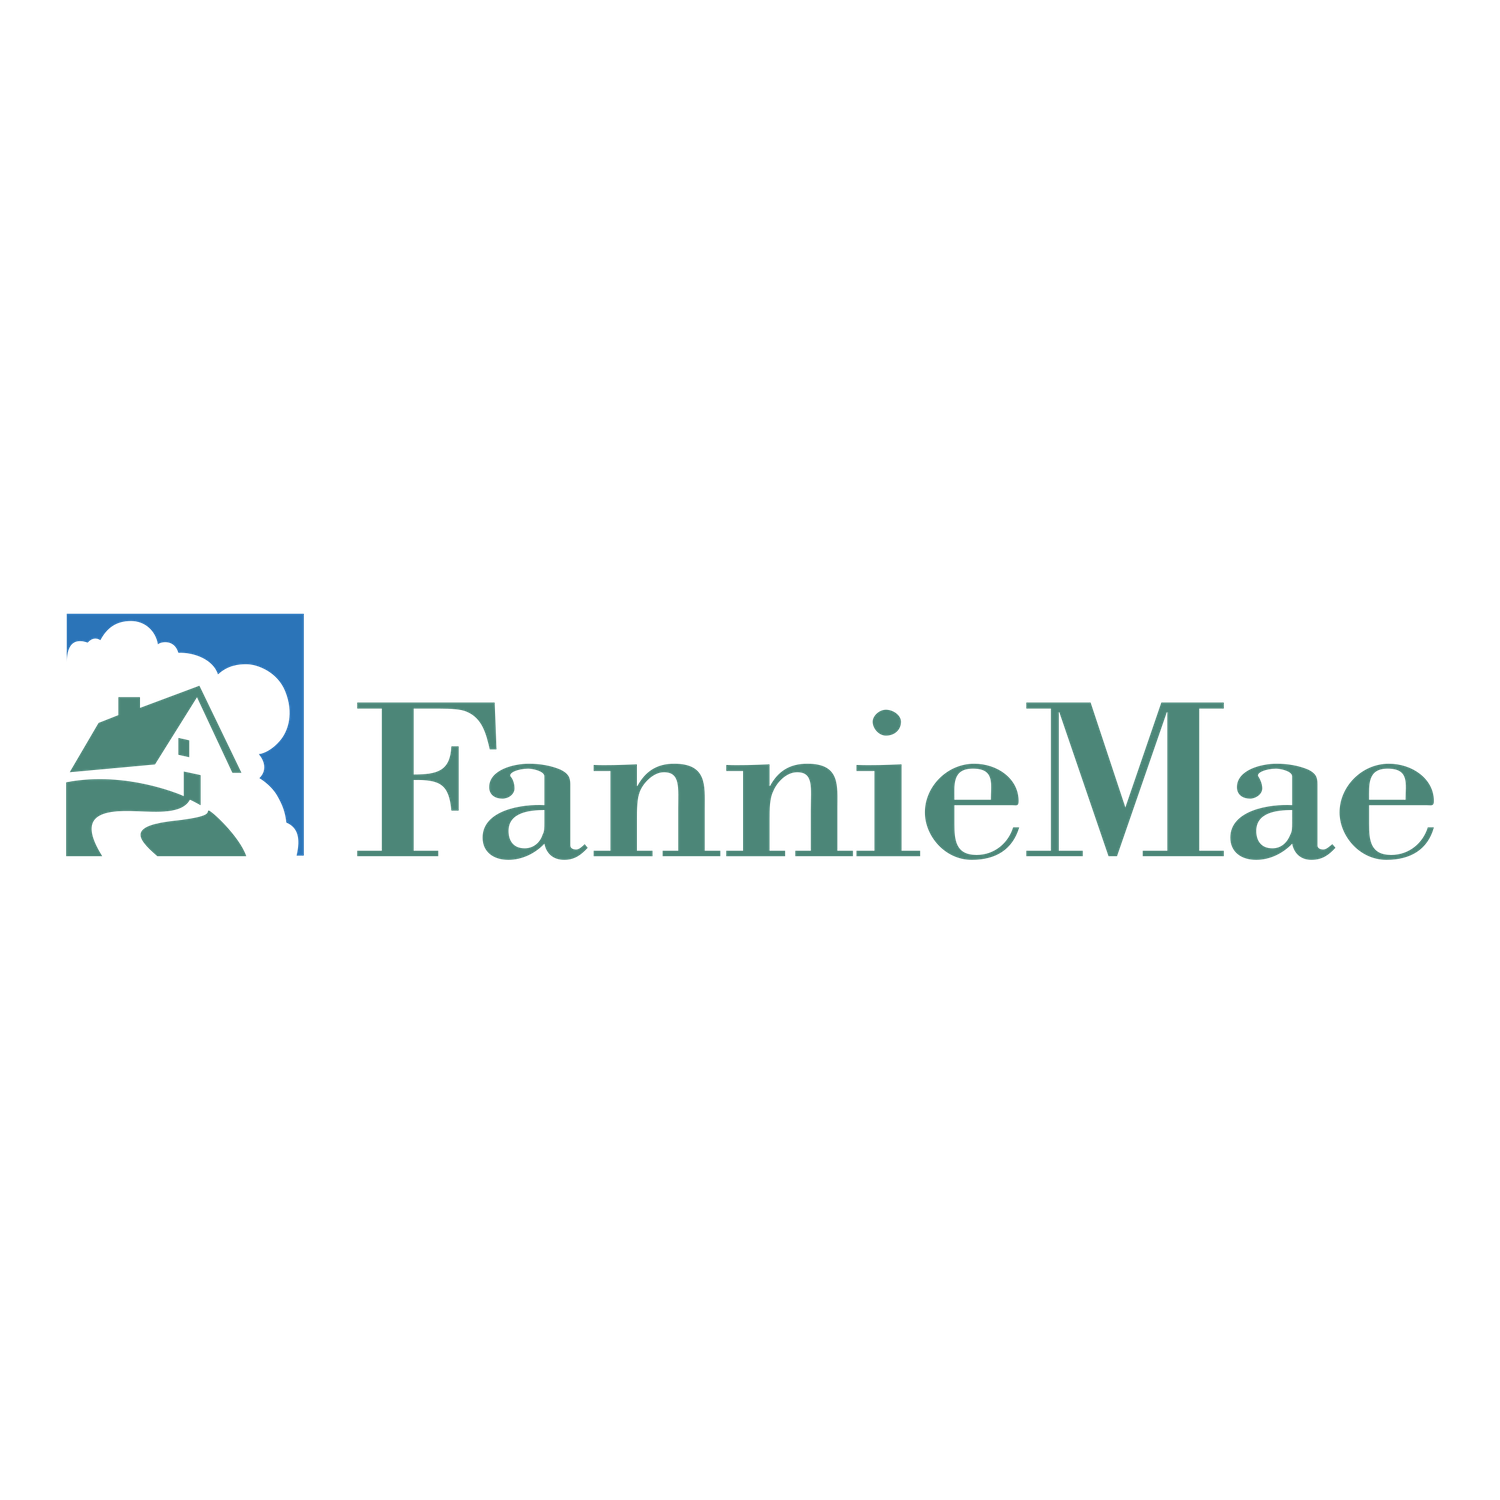 fannie-mae-2-logo-png-transparent.png